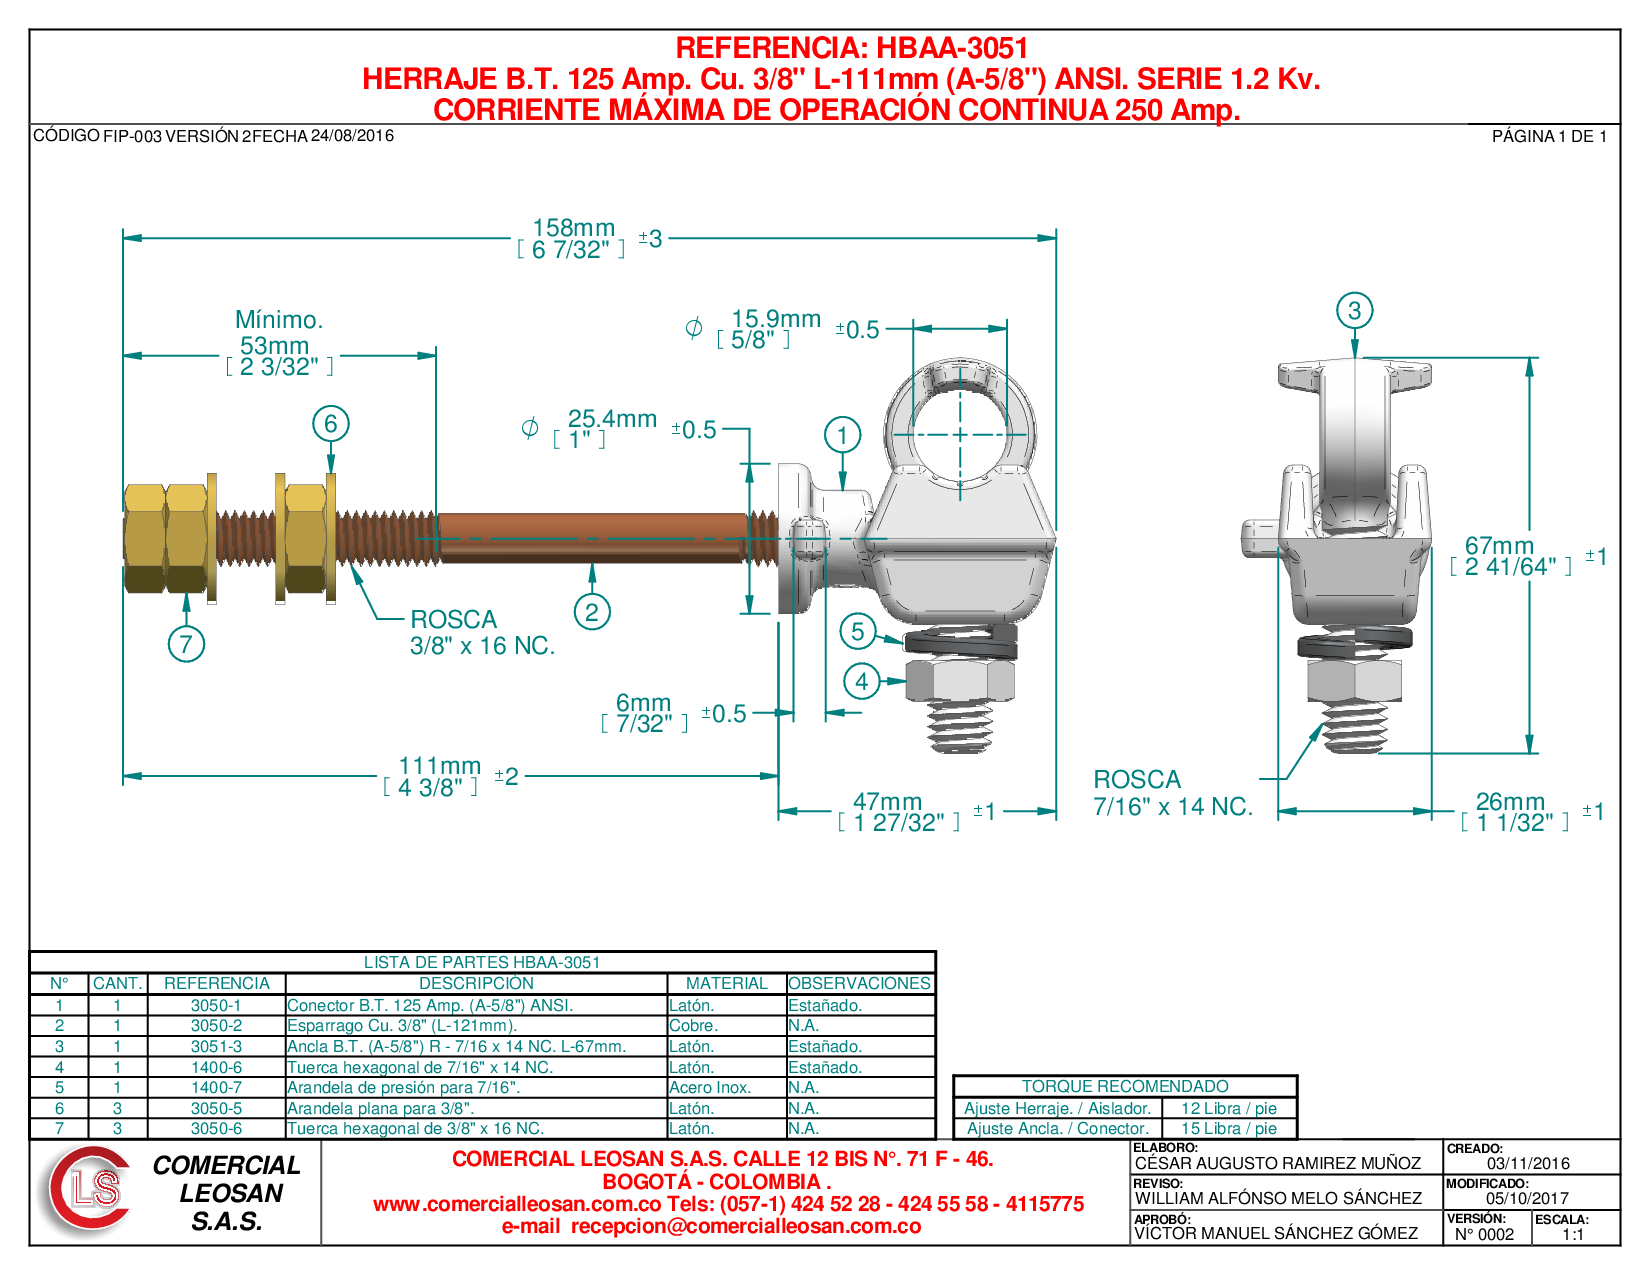 HERRAJE B.T. 125 Amp. Cu. 3/8" L-111mm (A-5/8") ANSI. SERIE 1.2 Kv.